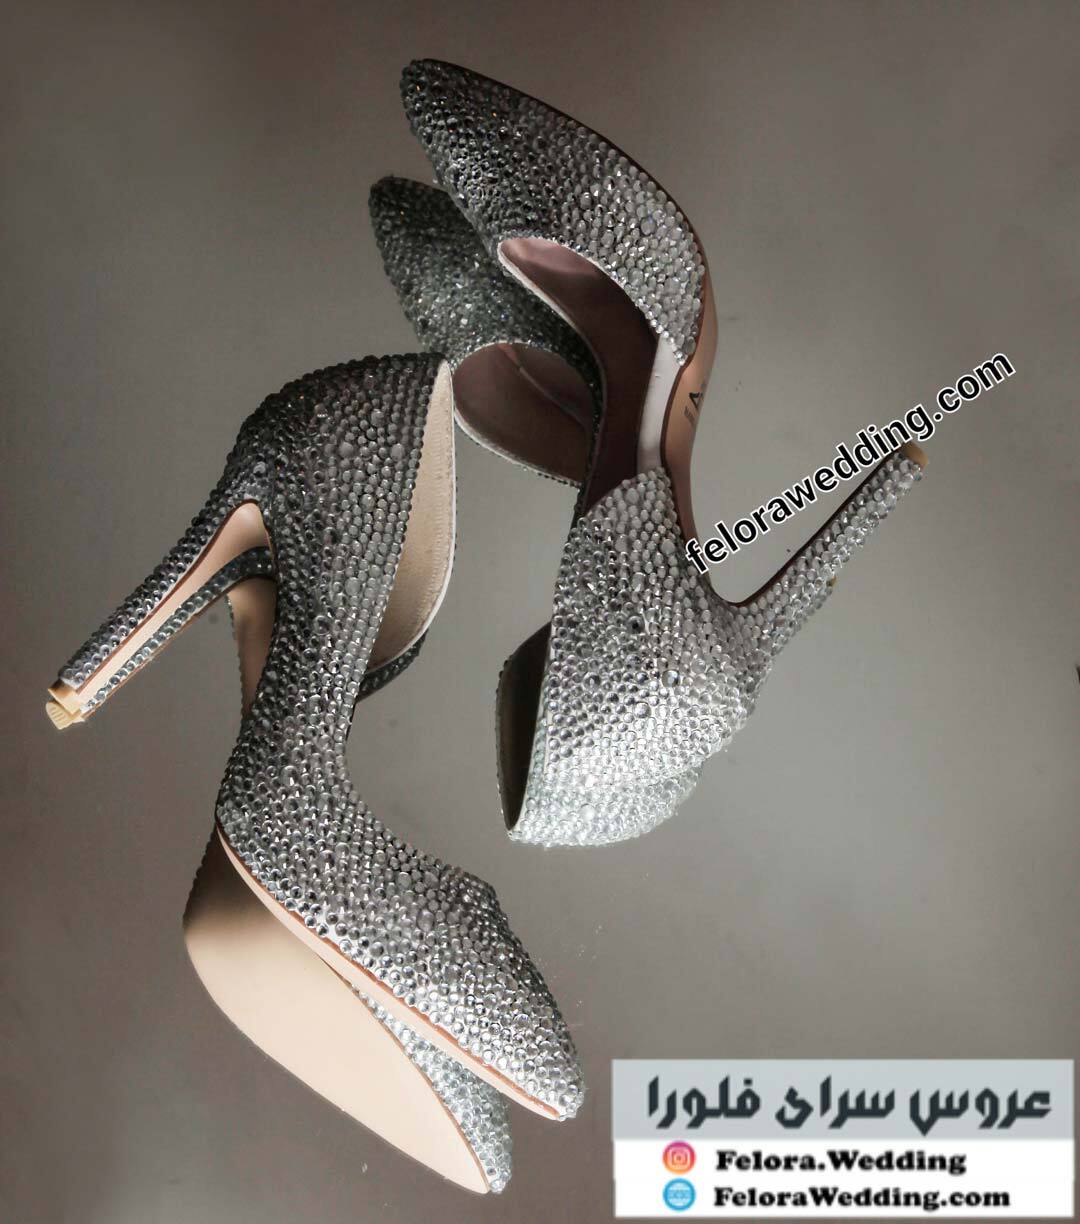  کفش عروس مدل سیندرلا | کد 1000 